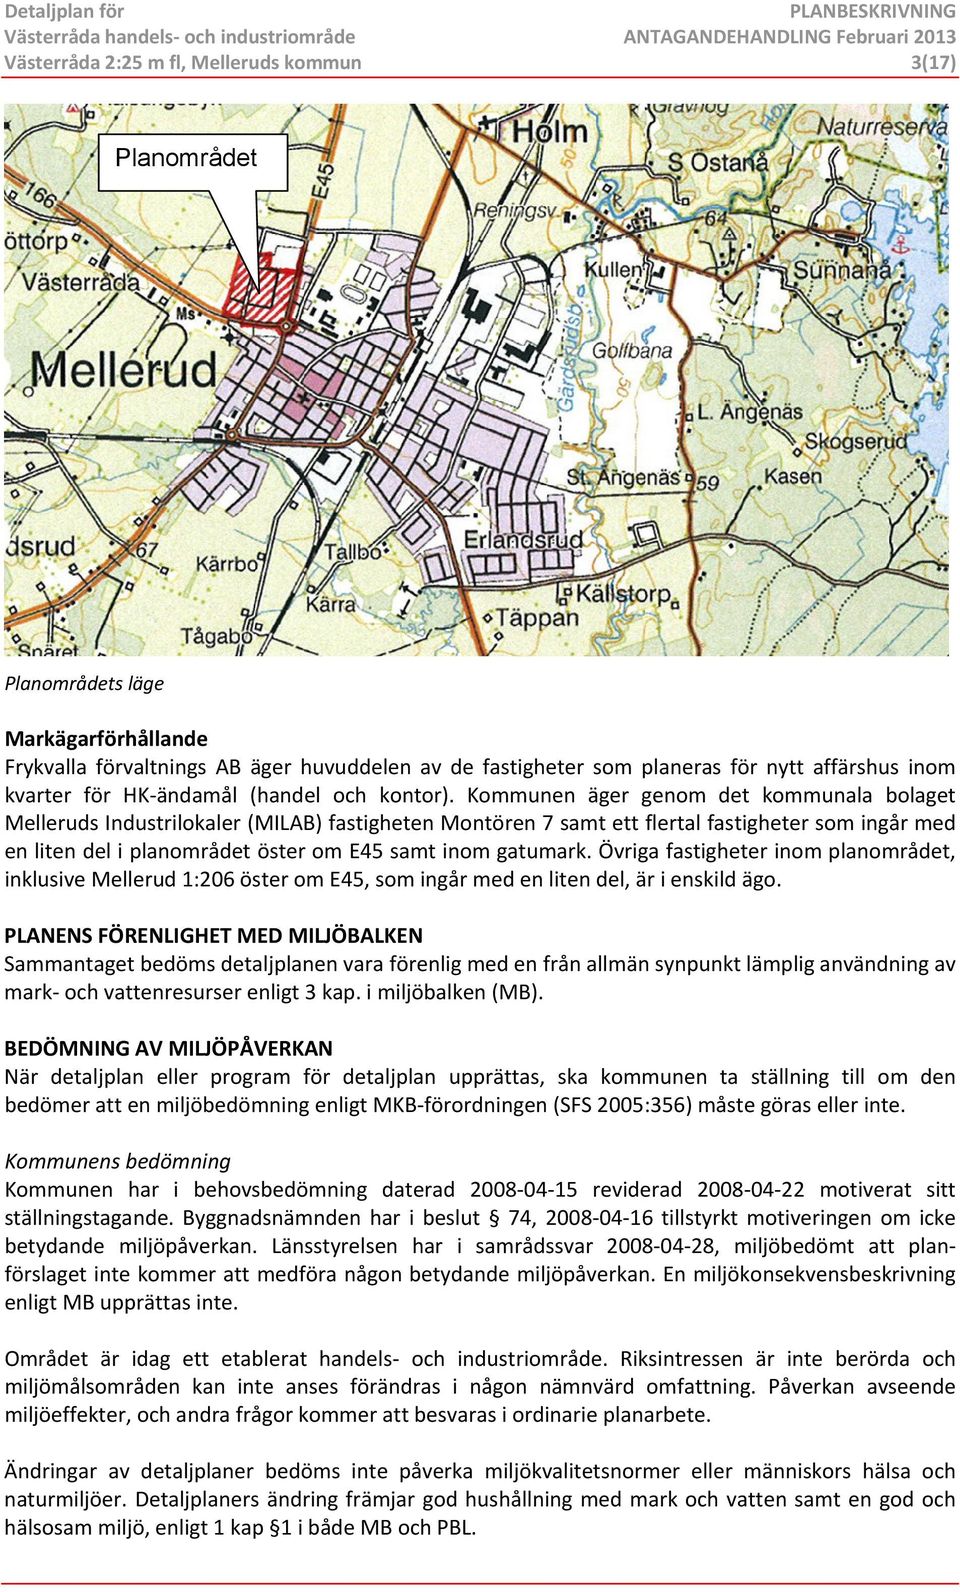 Kommunen äger genom det kommunala bolaget Melleruds Industrilokaler (MILAB) fastigheten Montören 7 samt ett flertal fastigheter som ingår med en liten del i planområdet öster om E45 samt inom